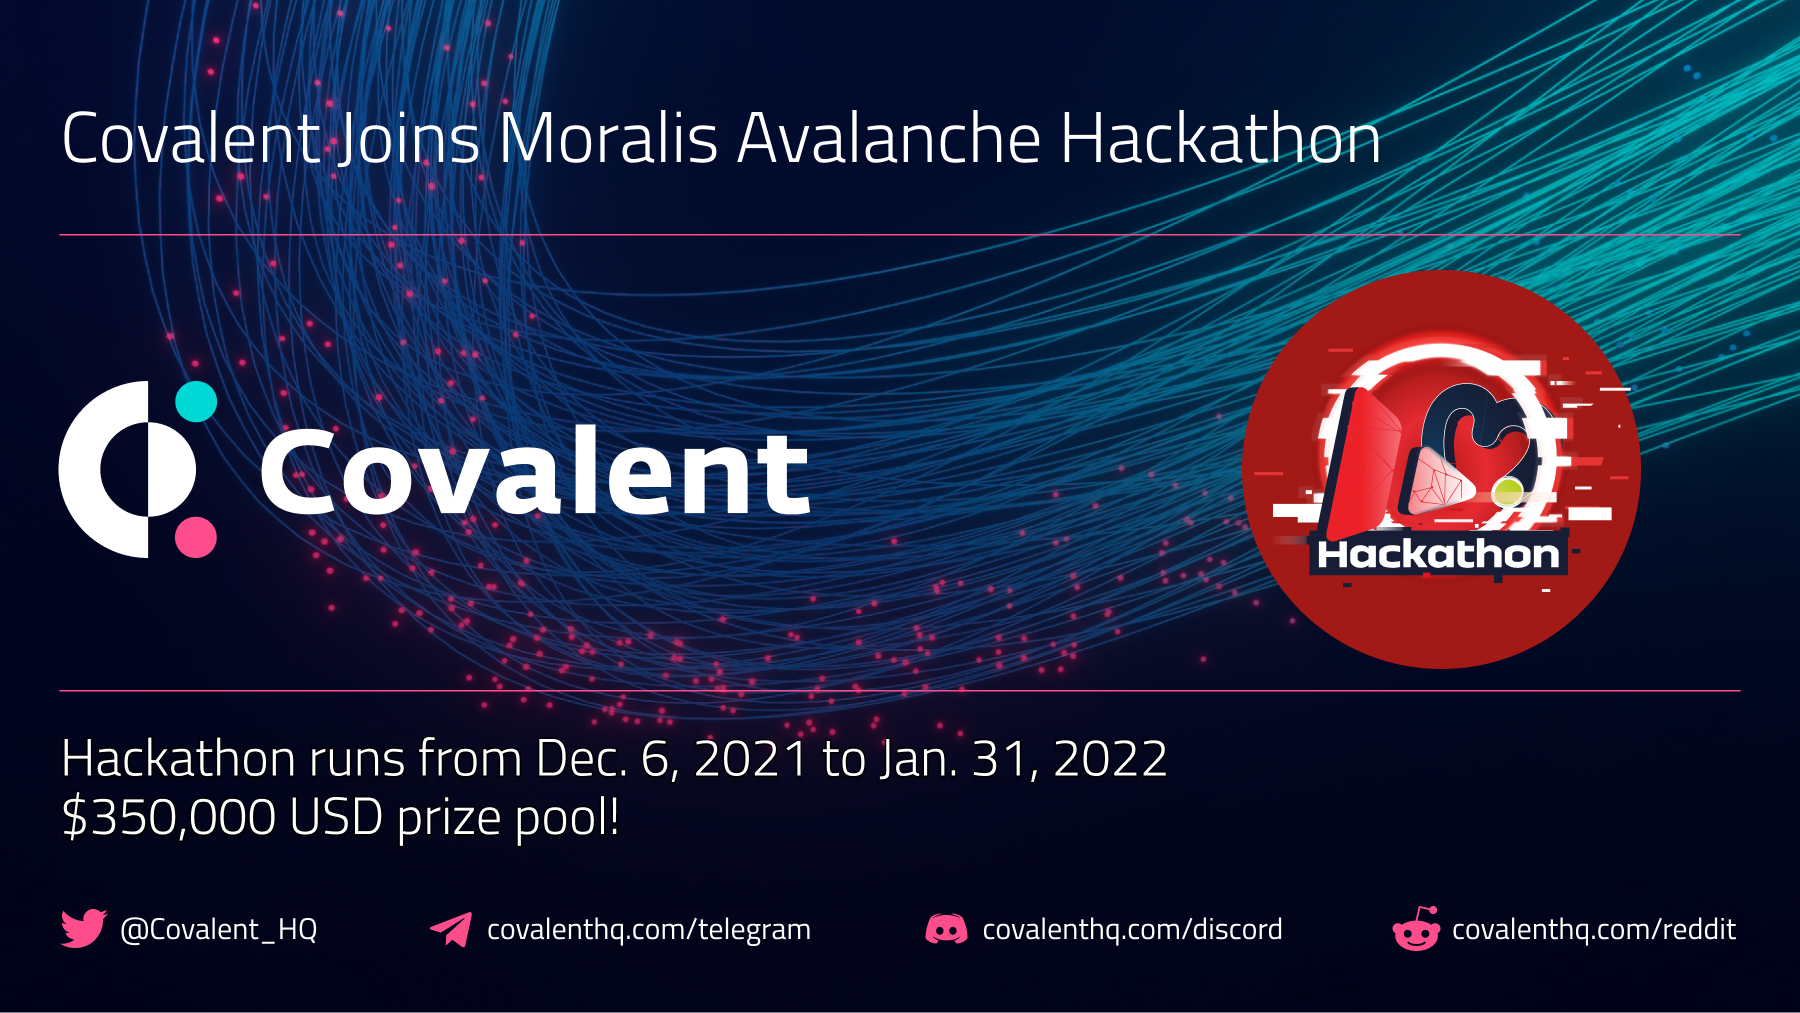 Covalent Joins Moralis Avalanche Hackathon